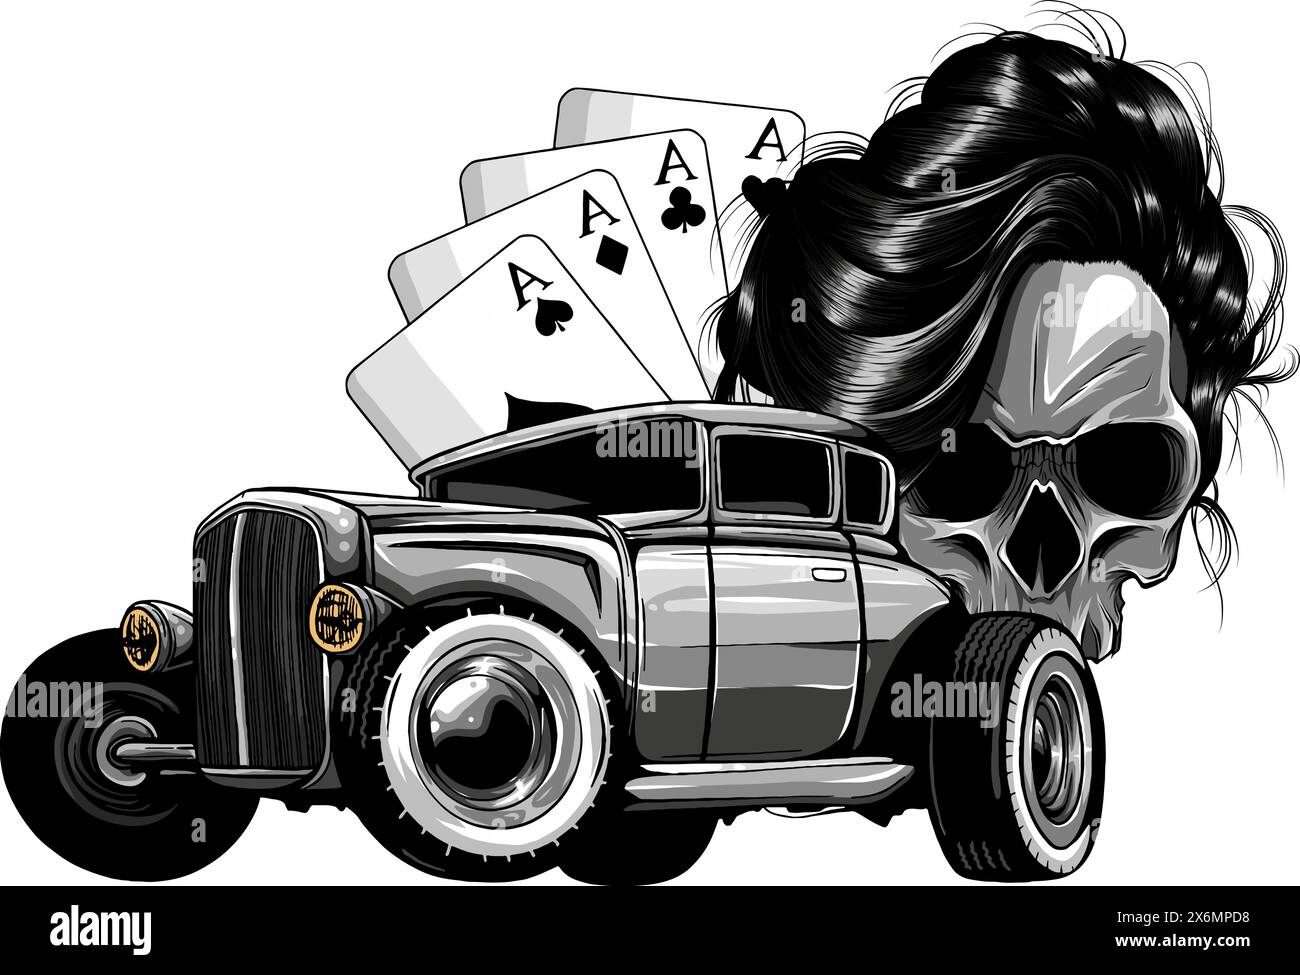 Illustration vectorielle du crâne monochrome avec tige chaude et as de poker sur fond blanc Illustration de Vecteur